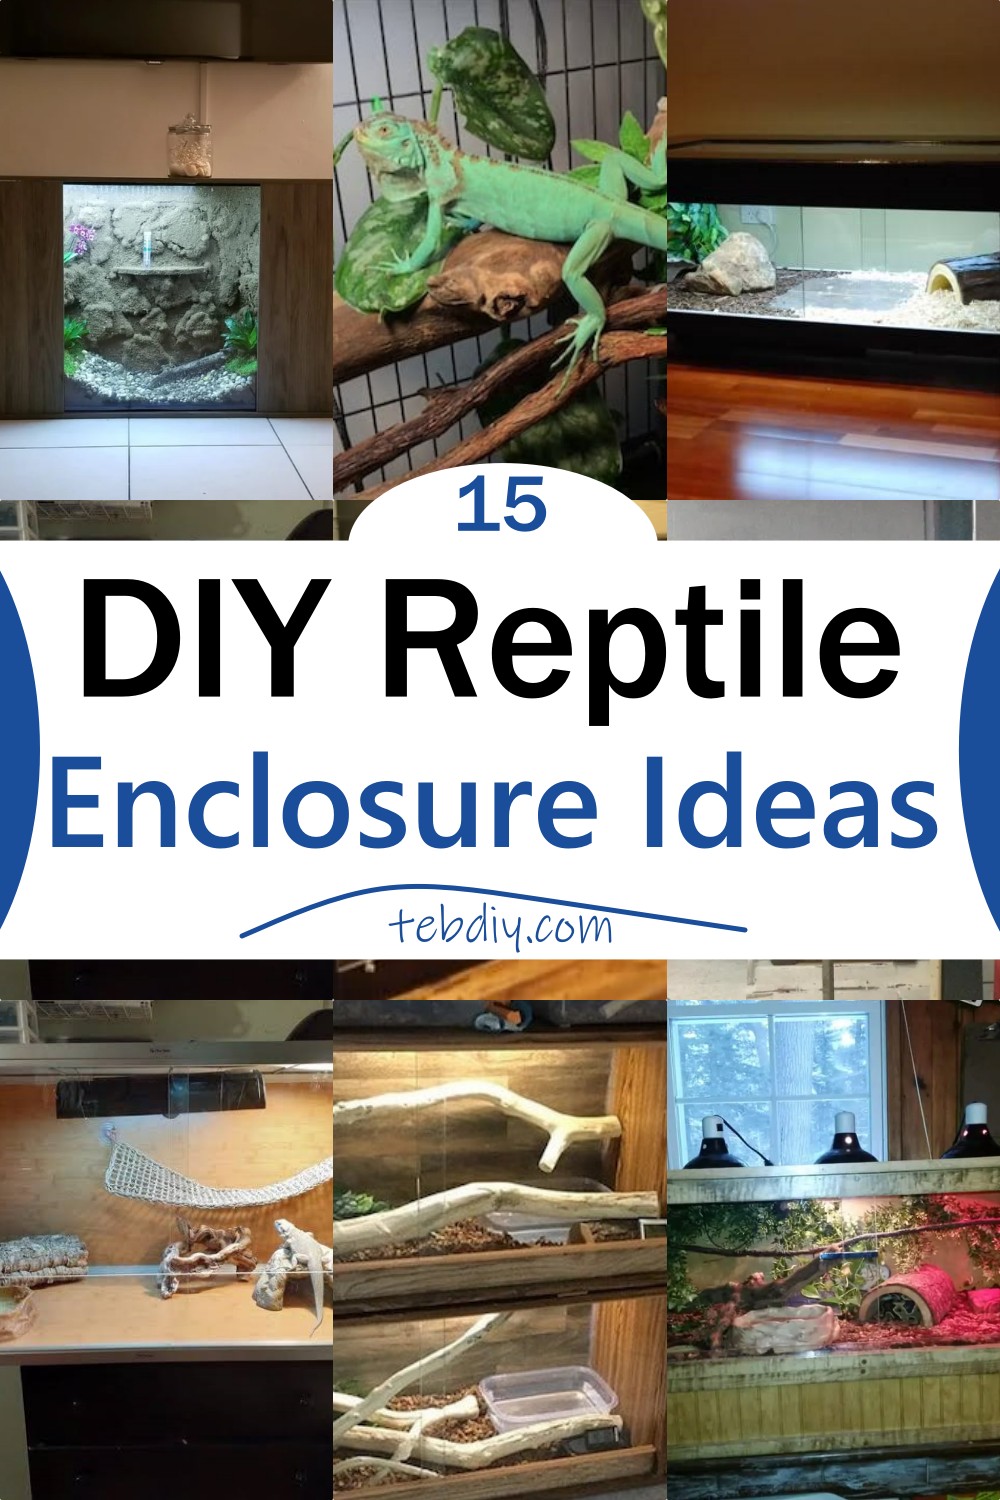 15 DIY Reptile Enclosure Ideas